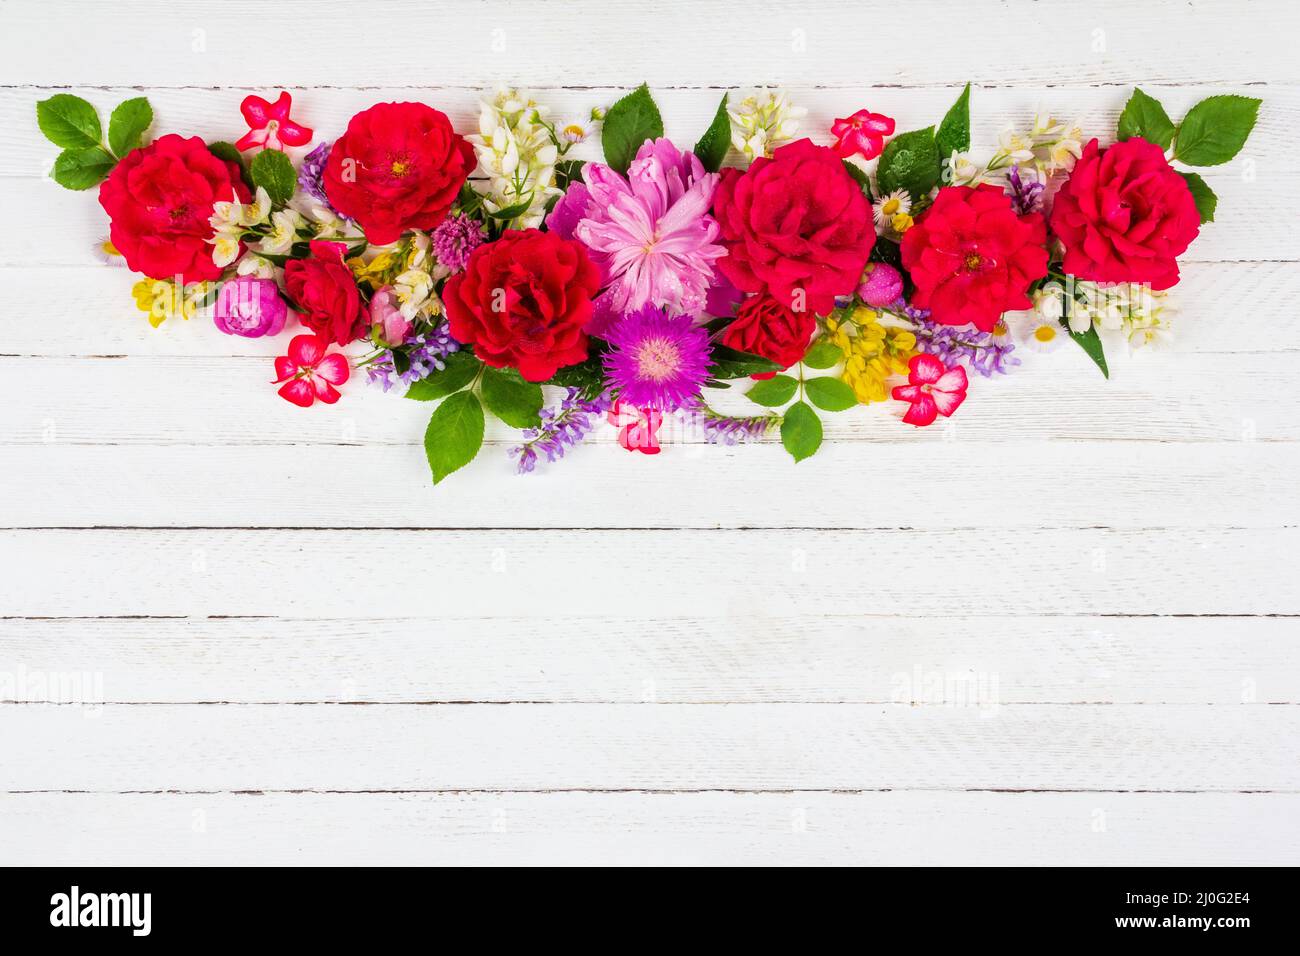 -Fotos Auflösung in Blumen pfingstrosen rosen -Bildmaterial blumen und – hoher Alamy